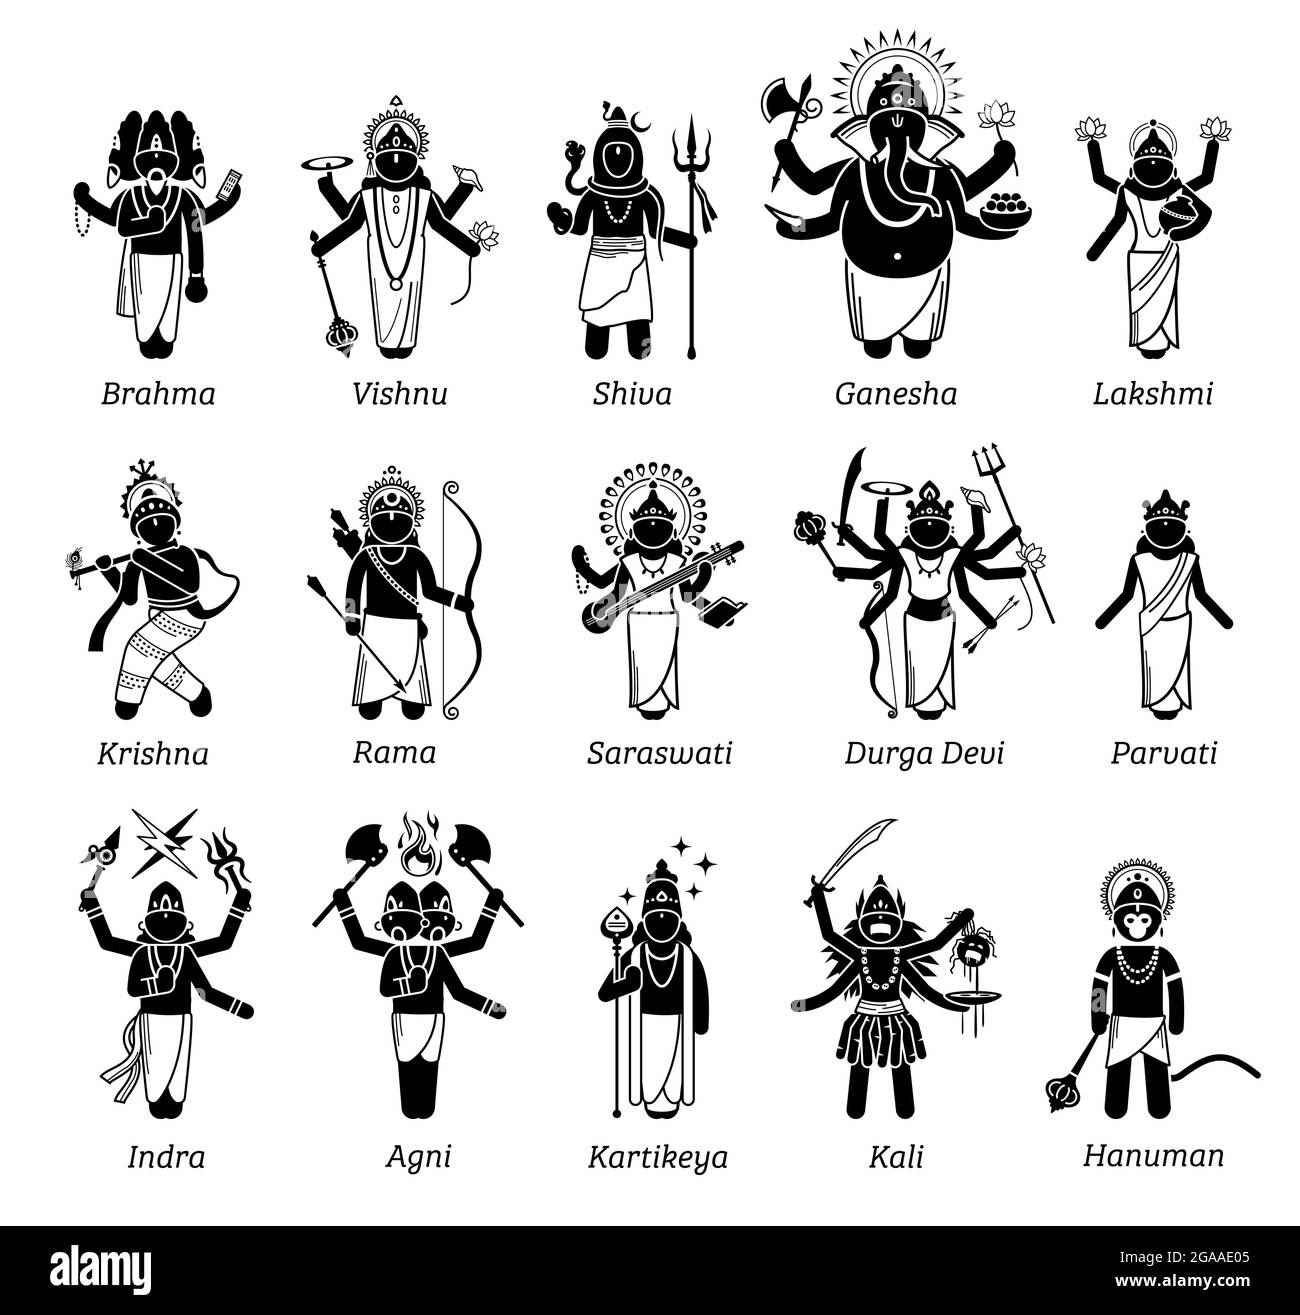 Hinduistische Götter, Göttin und Gottheiten in Strichmännchen-Ikonen. Vektorillustrationen der populären Hindu-Gottheiten Brahma, Vishnu, Shiva, Genesha, Lakshmi, Krishna Stock Vektor